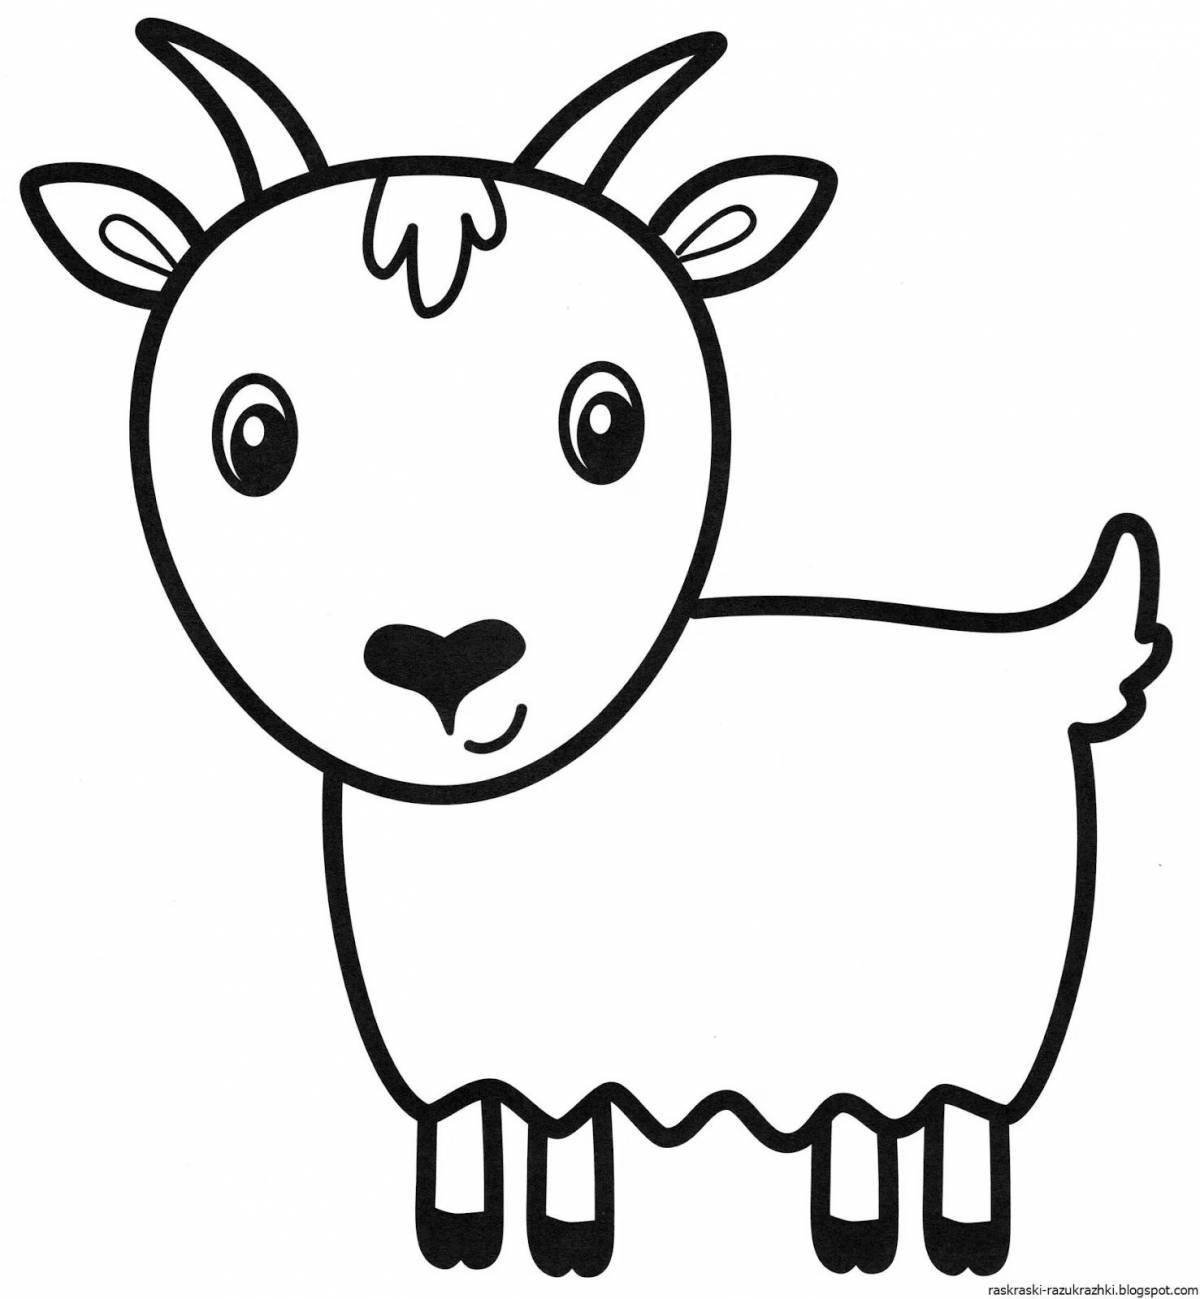 Красочная страница раскраски коз для детей